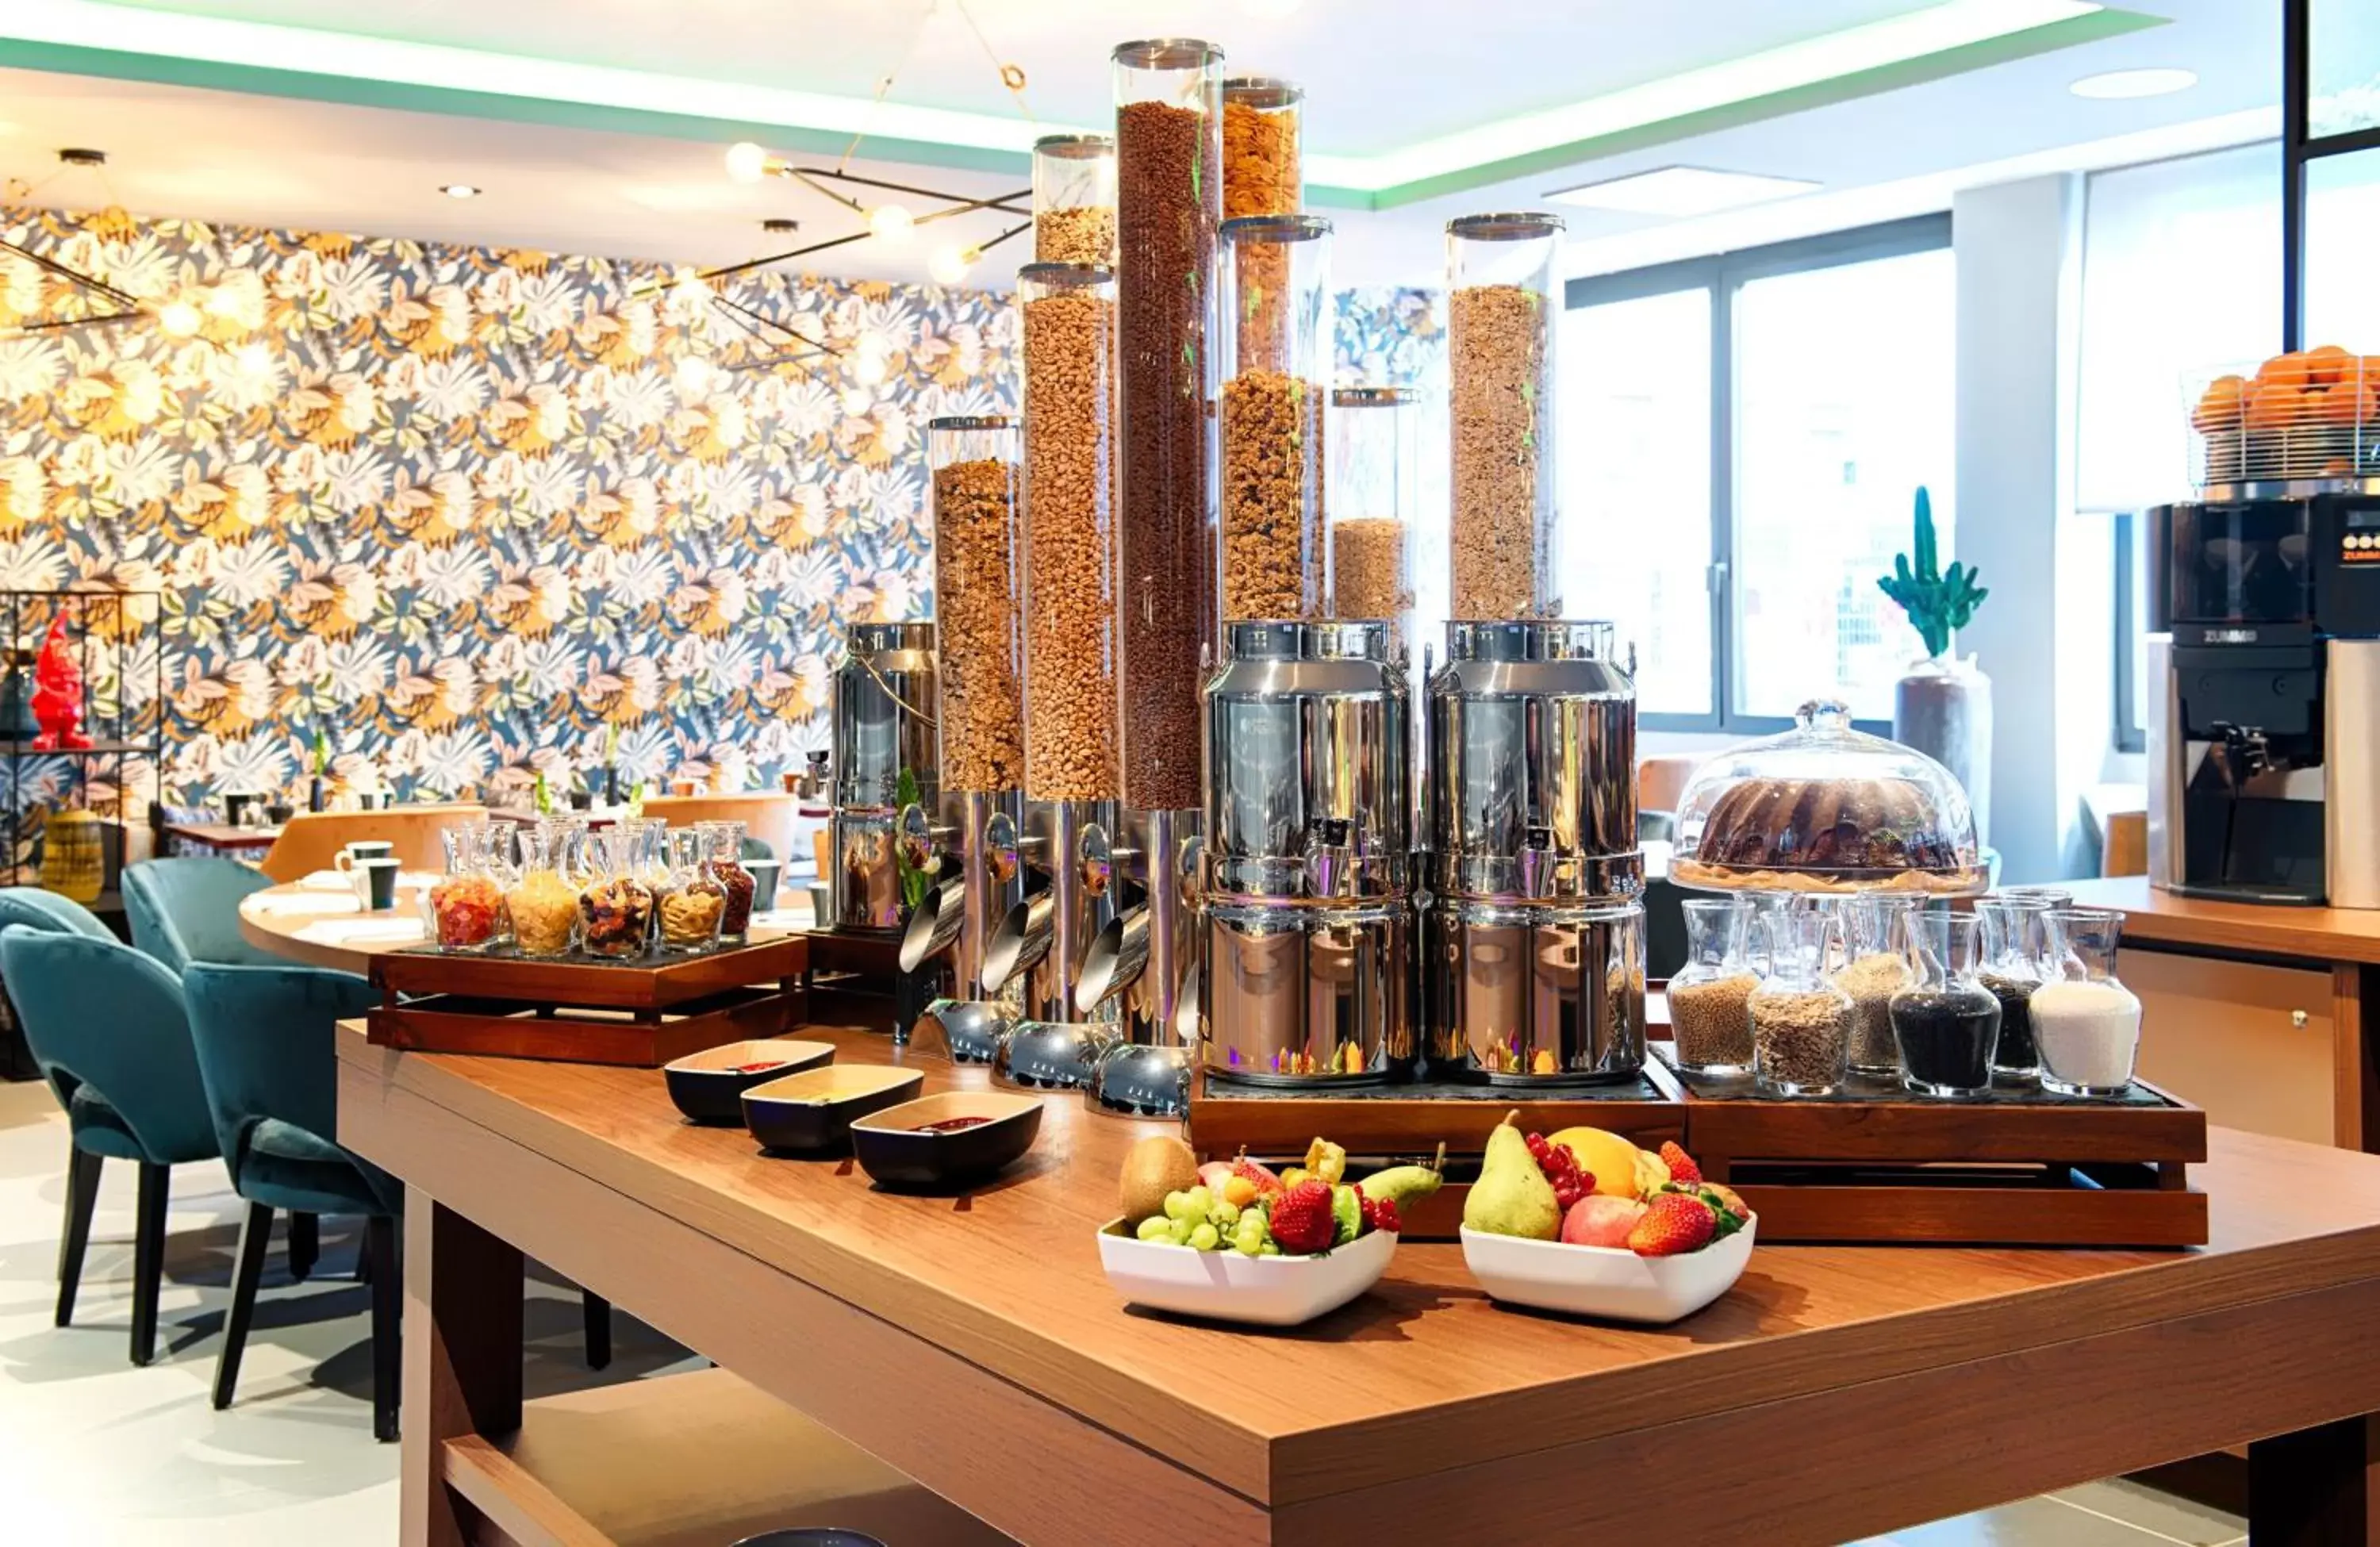 Buffet breakfast in NYX Hotel Mannheim by Leonardo Hotels